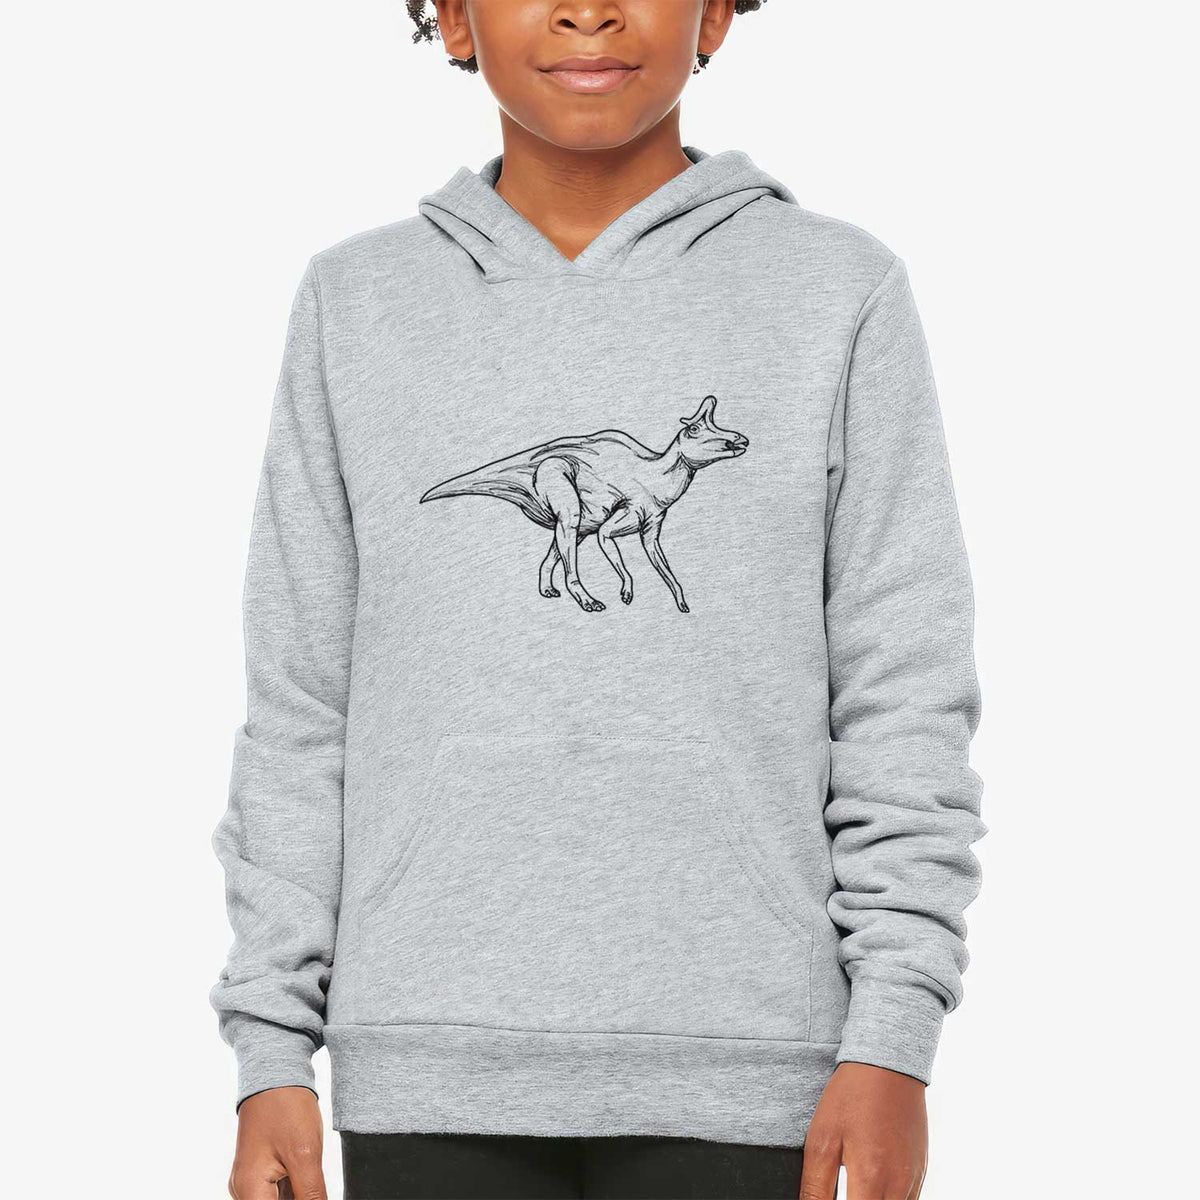 Lambeosaurus Lambei - Youth Hoodie Sweatshirt